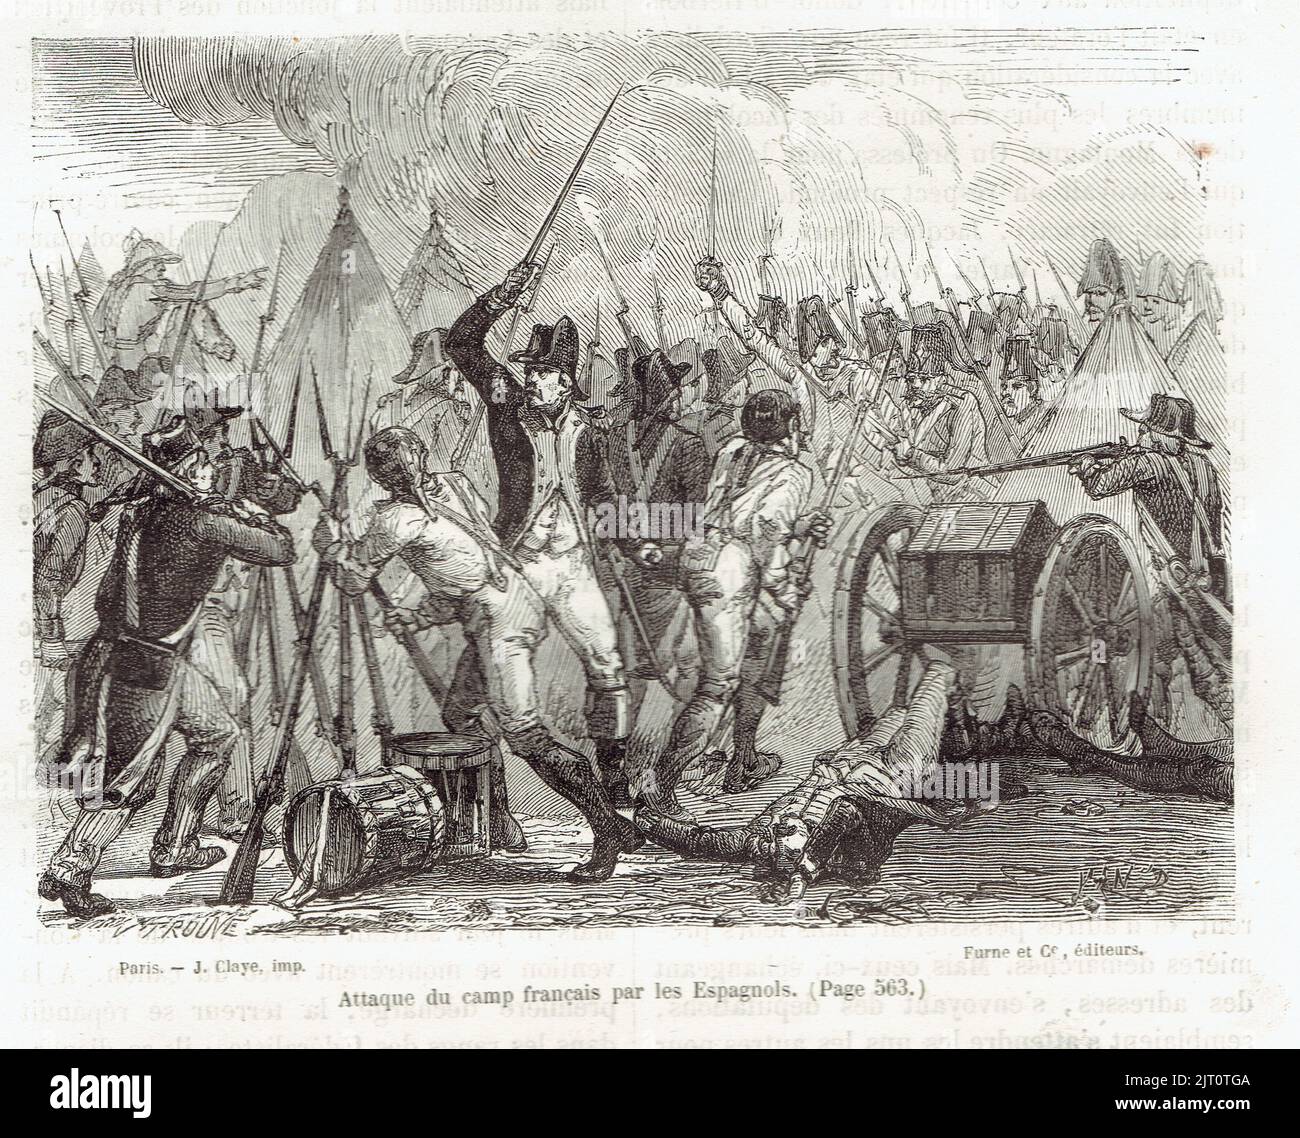 attaque d'un camping francais par les espagnols 1793 - 1794 Foto Stock